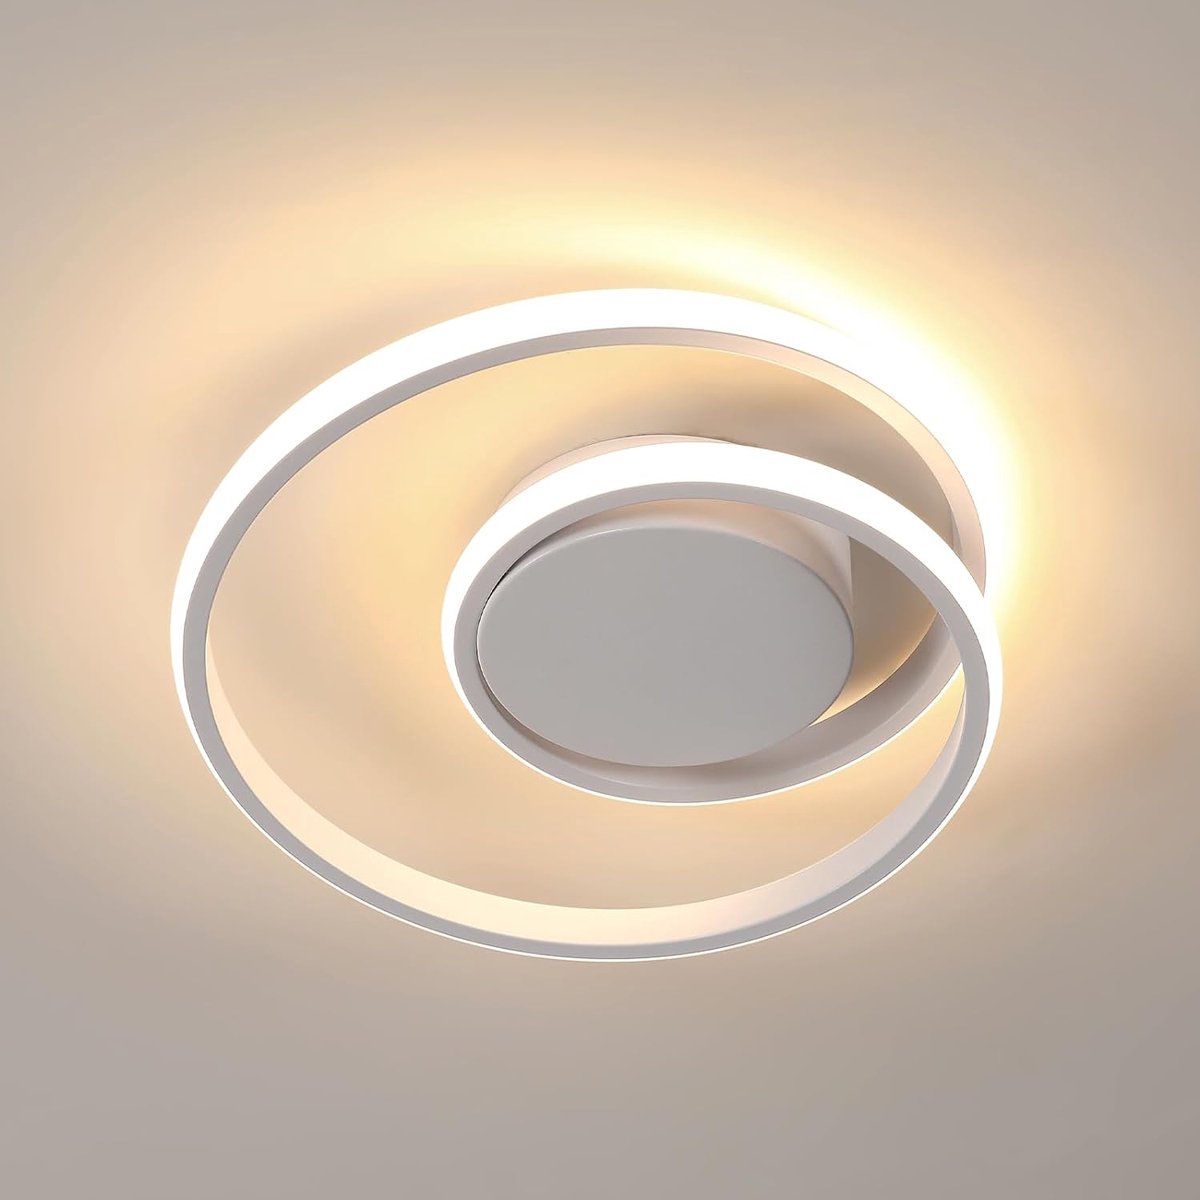 Delaveek-Moderne LED Plafondlamp-30W 3375LM- 3000K Warm Wit - Wit- Spiraalvormige-30CM